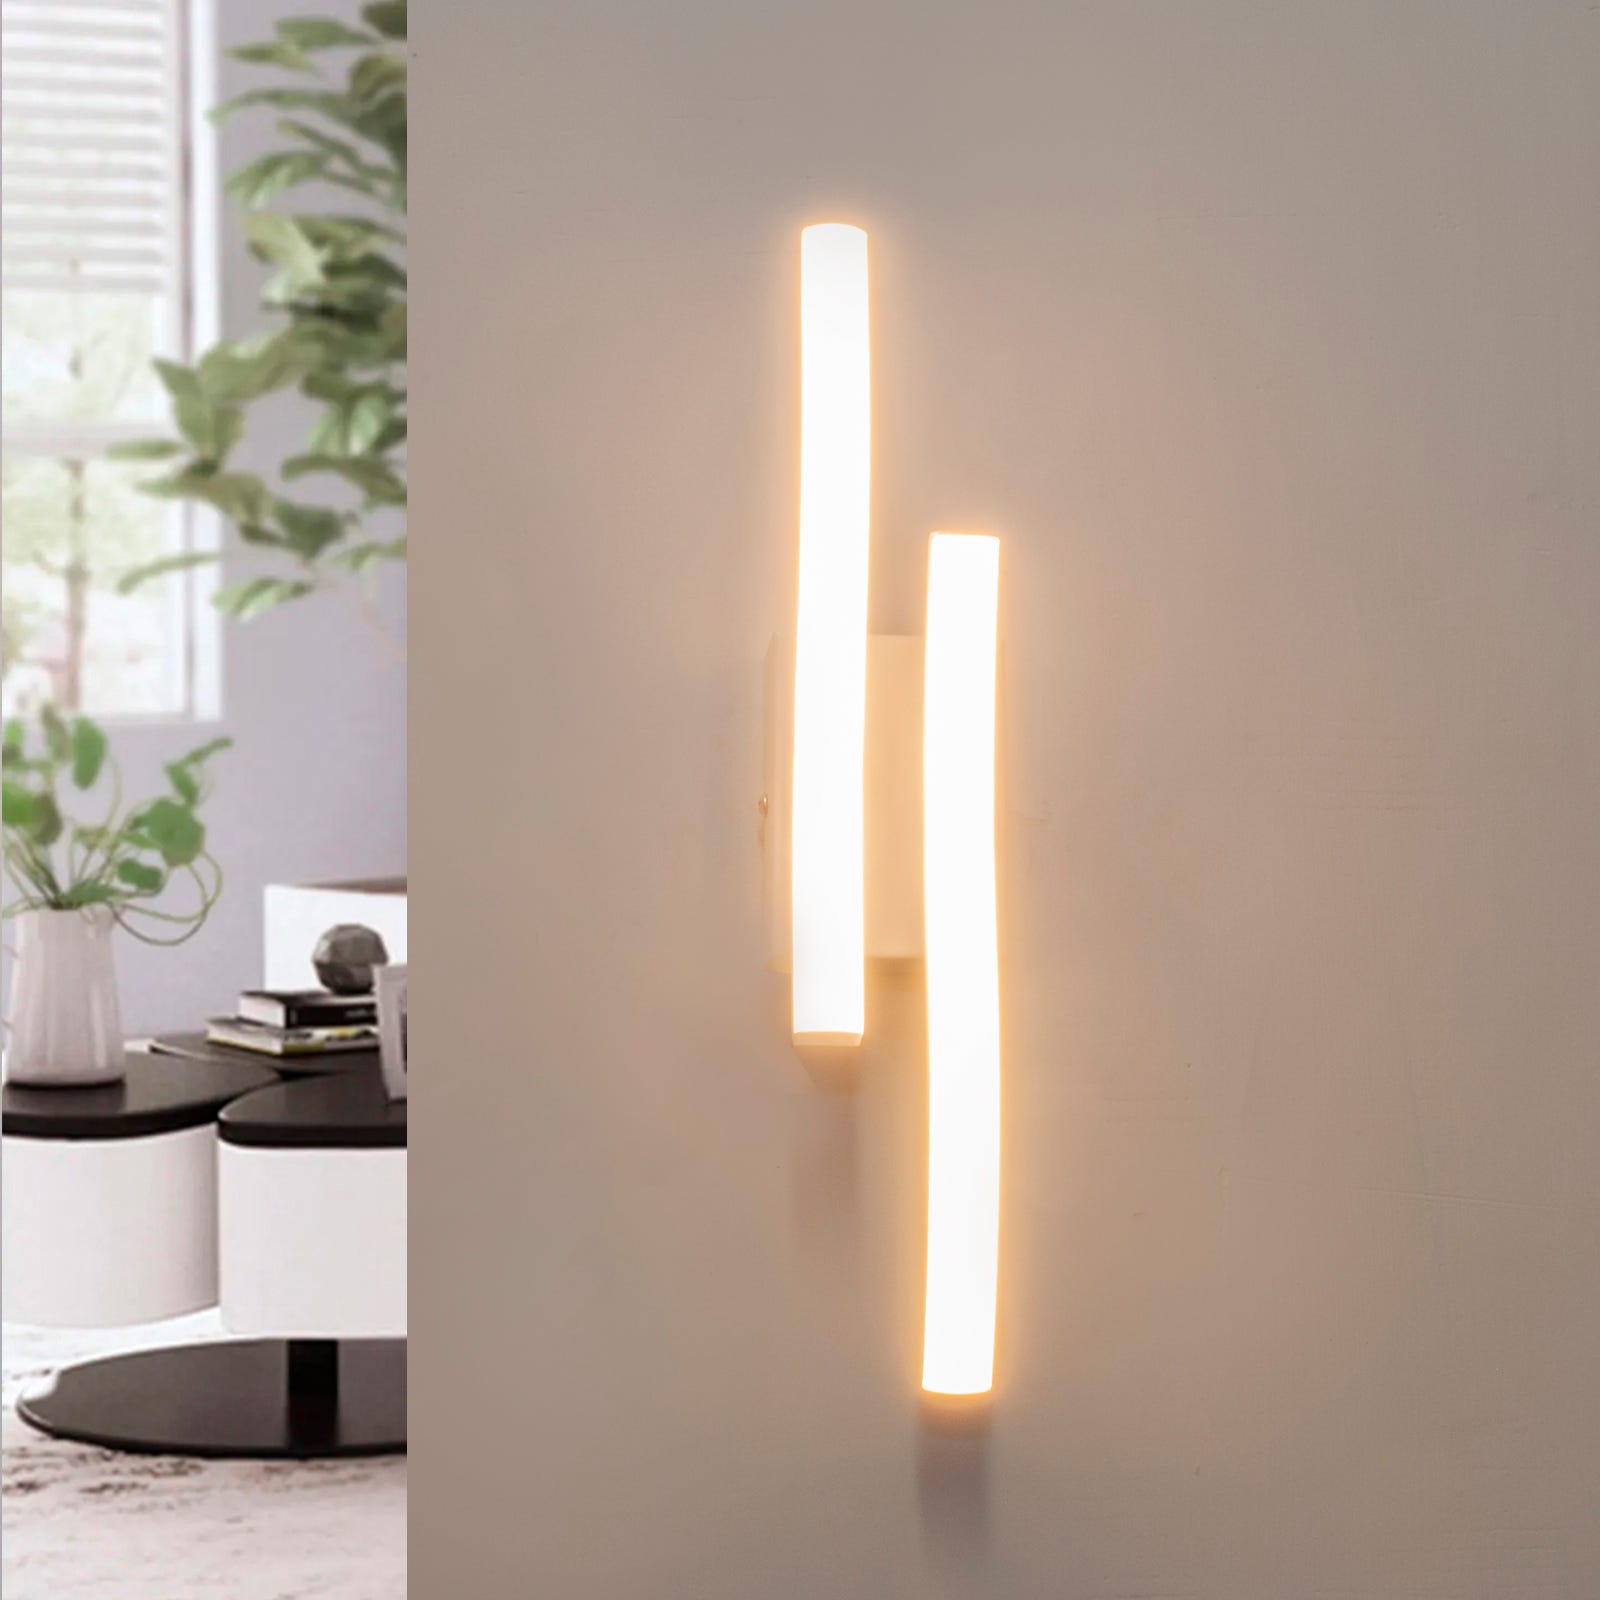 Lampada parete muro applique bianco moderno LED 10W luce stilizzata  comodino soggiorno salotto 230V NATURALE 4000K